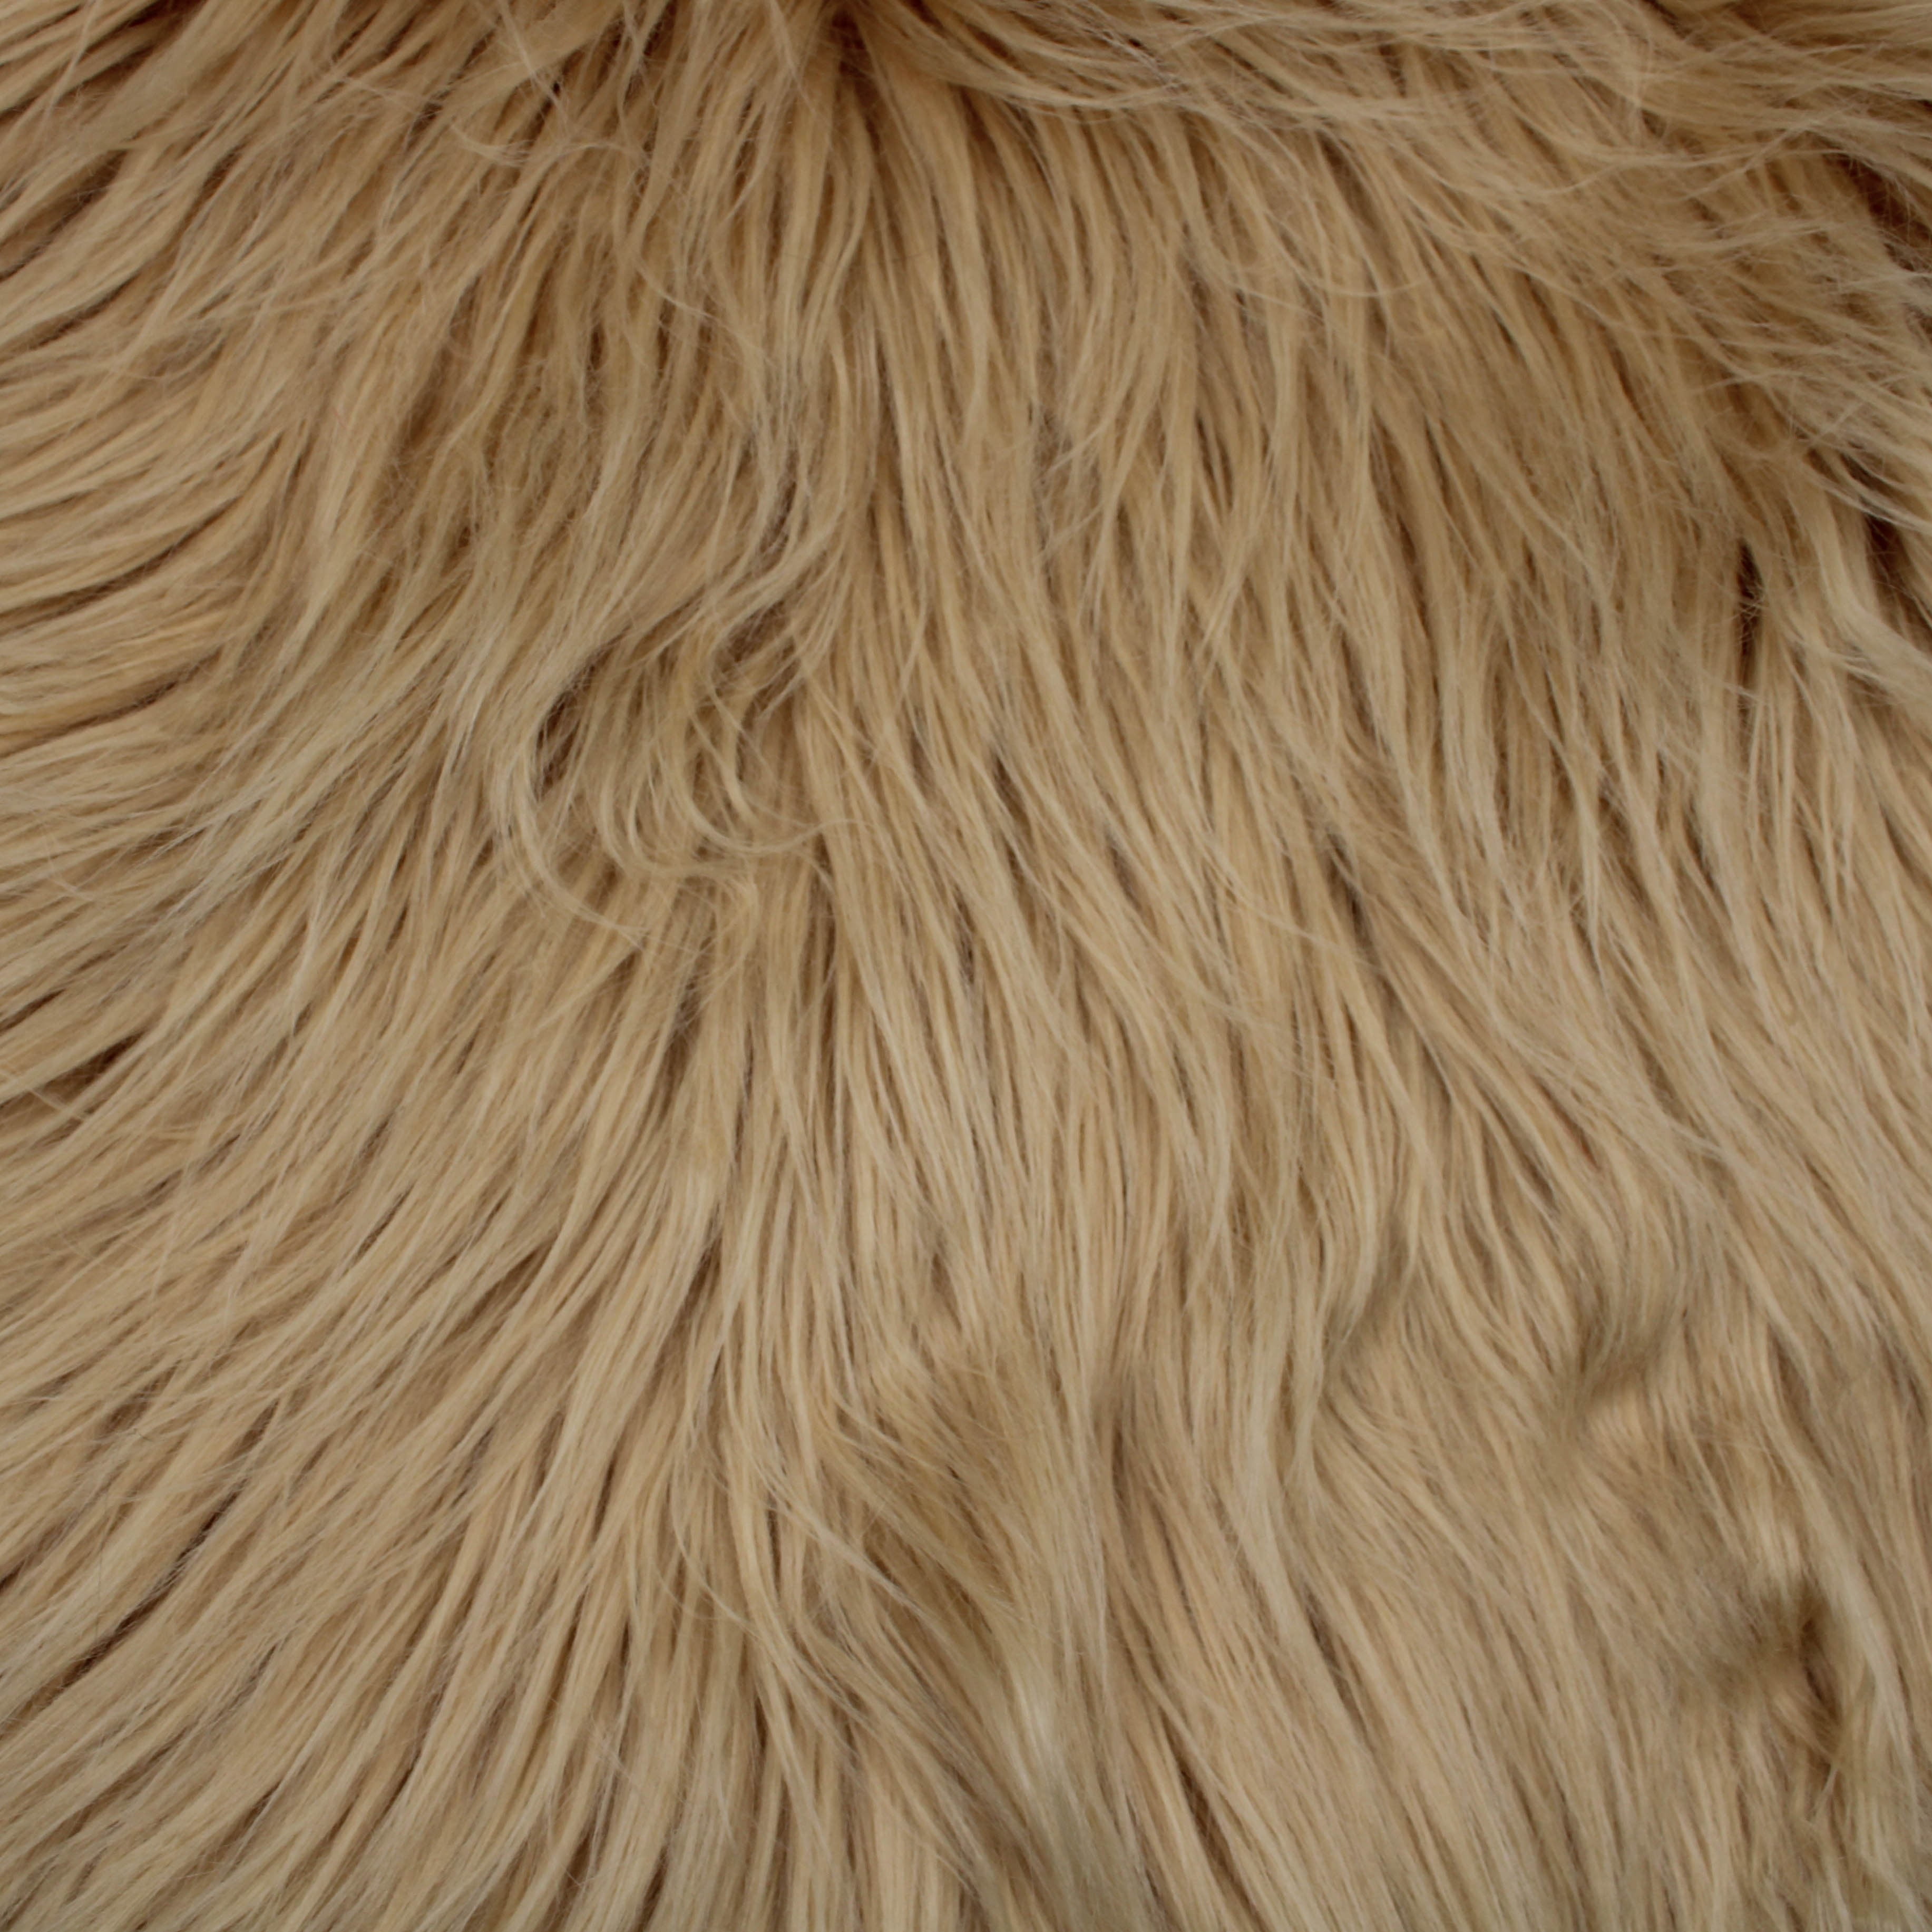 FREE SHIPPING 15 YARDS Camel Faux Fur Fabric Long Pile Mongolian